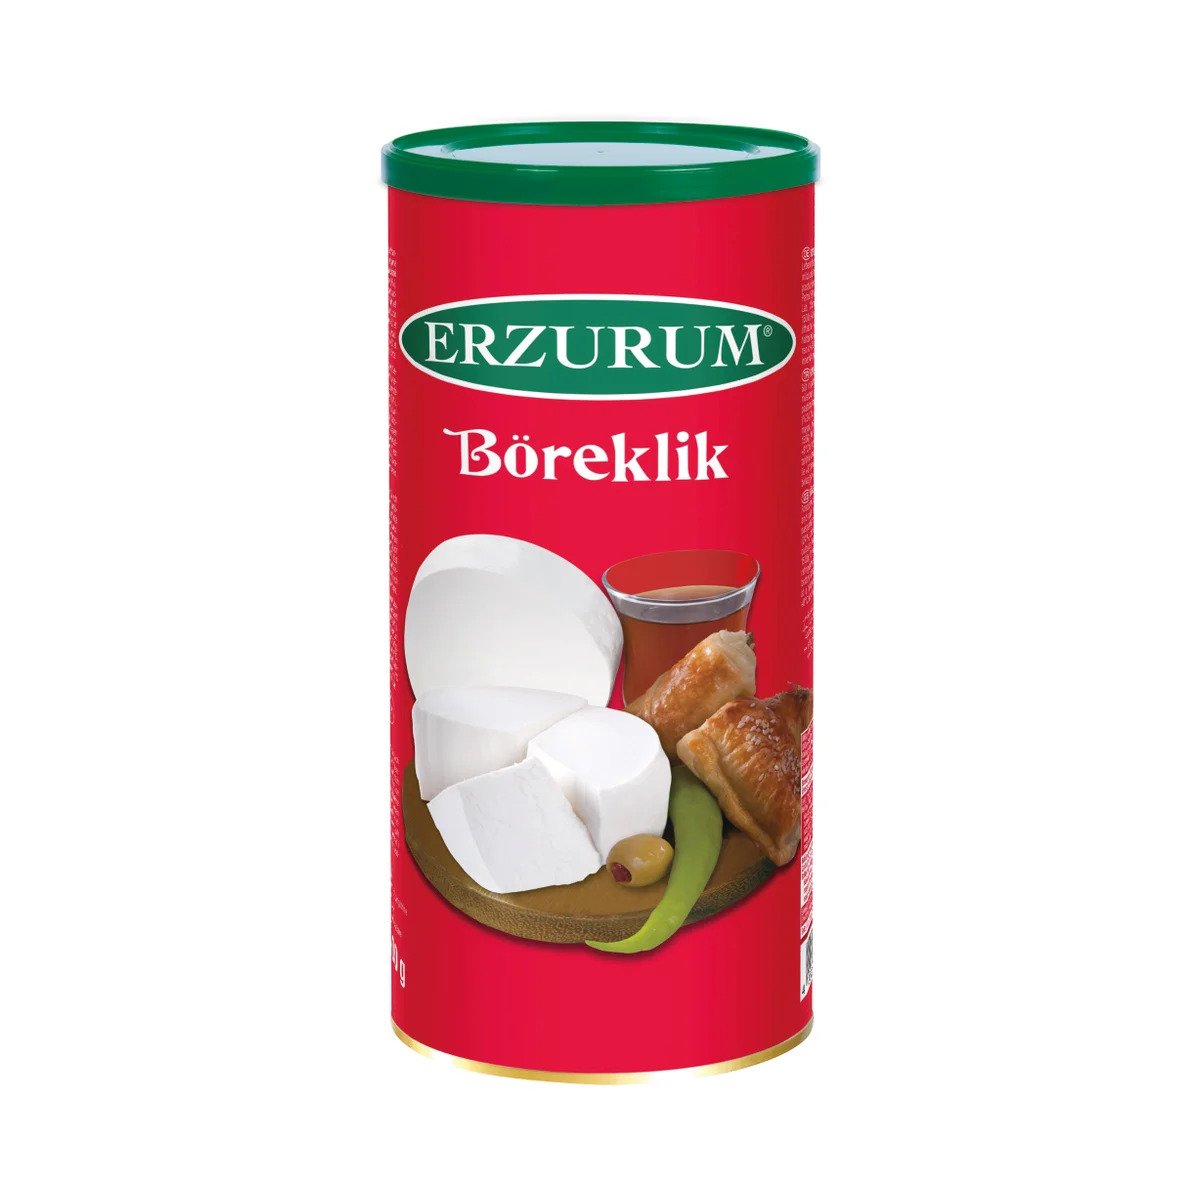 Erzurum Boreklik Cheese 28.21 Oz (800 Gr)